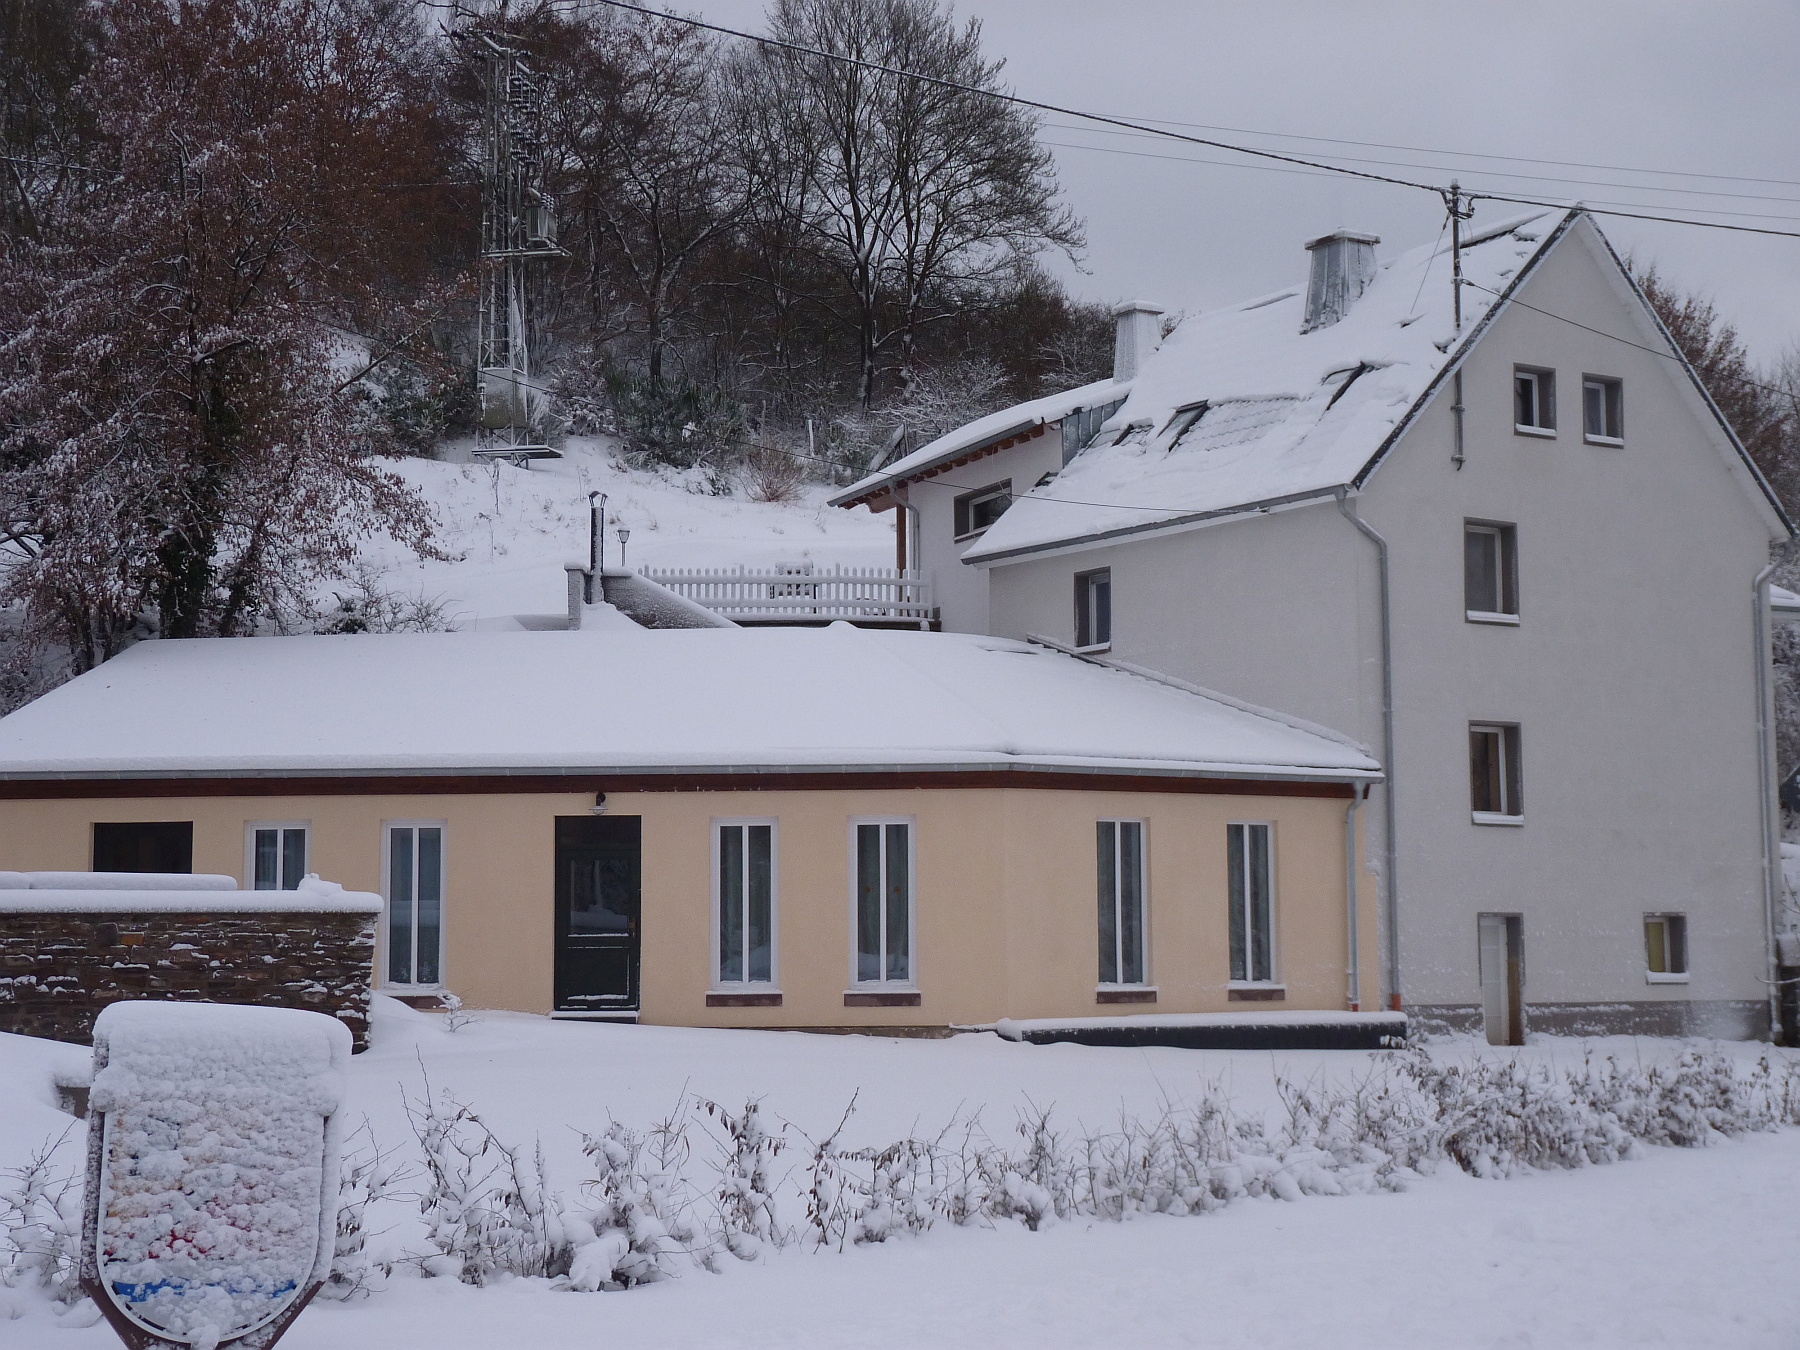 Ferienhaus Engelsdorf im Winter - Gäste-Lounge & Haupthaus